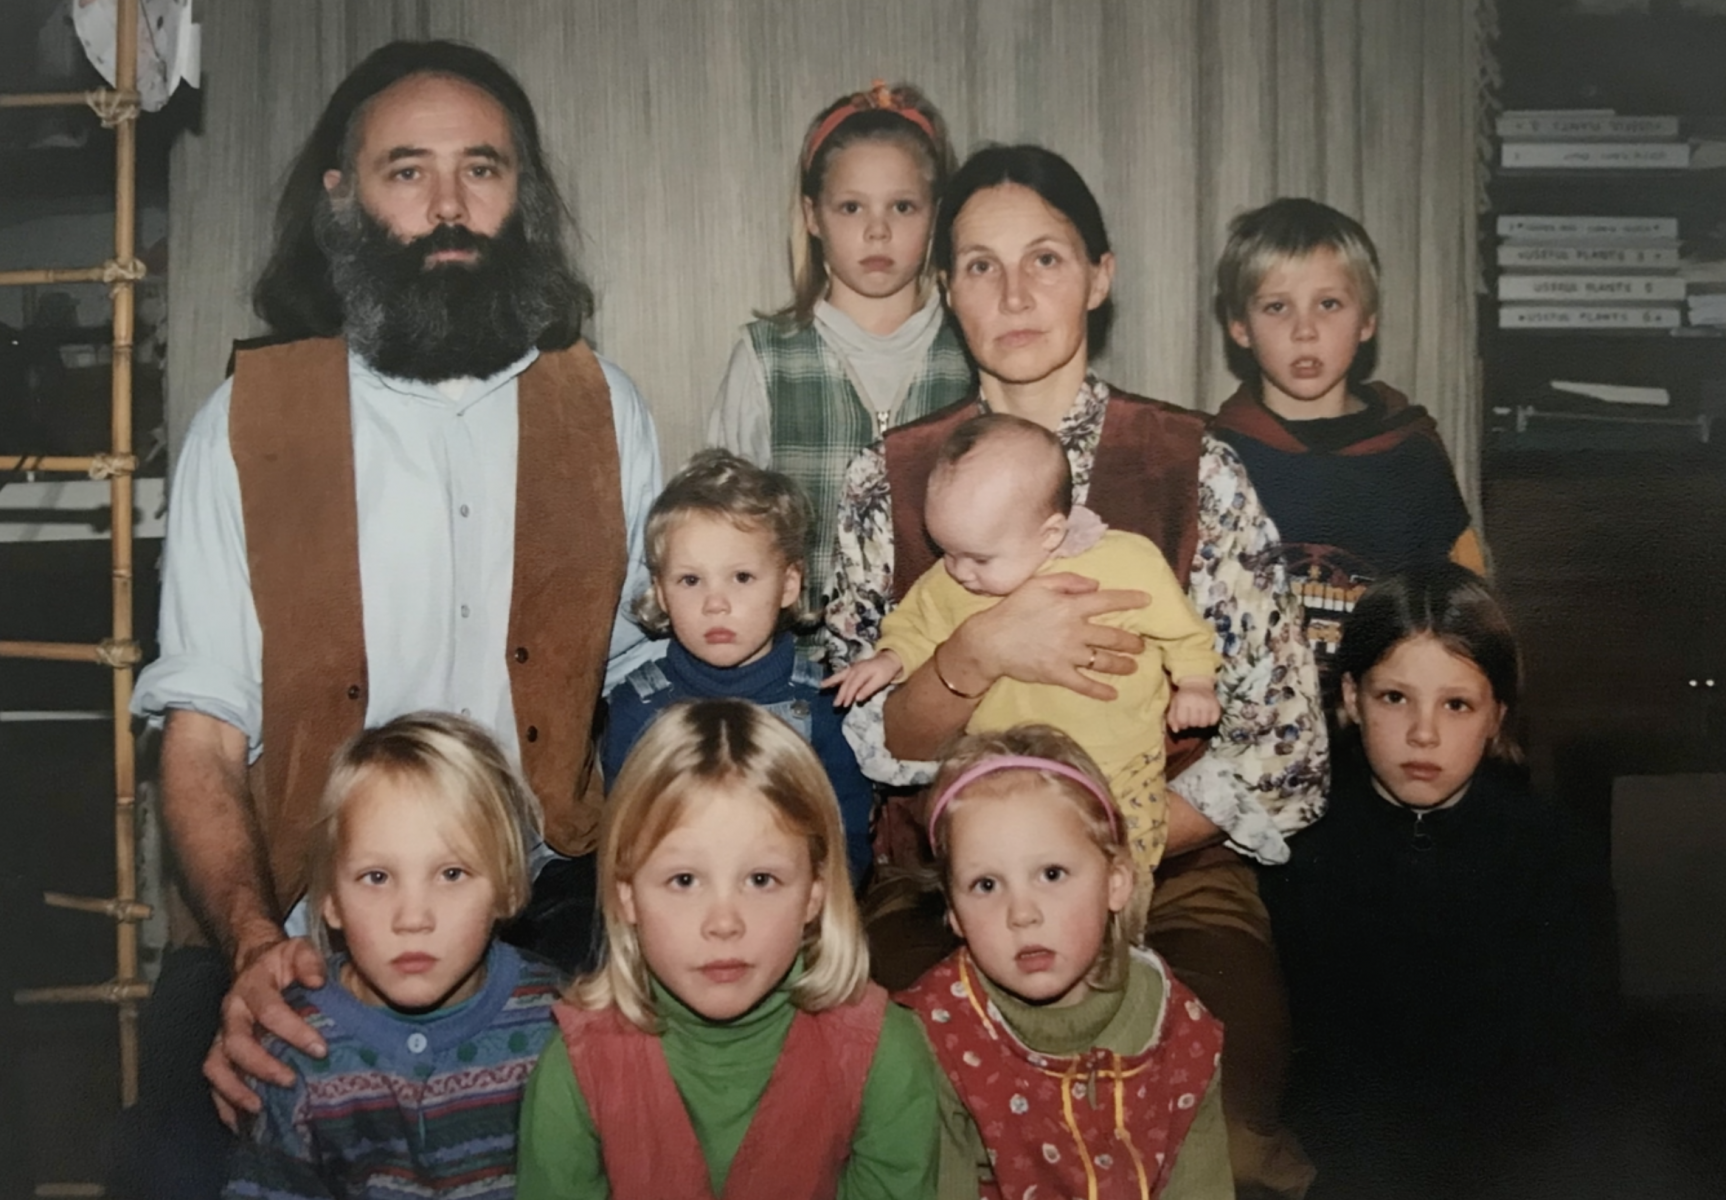 De kinderen van Ruinerwold: indrukwekkende documentaire over Ruinerwold gezin